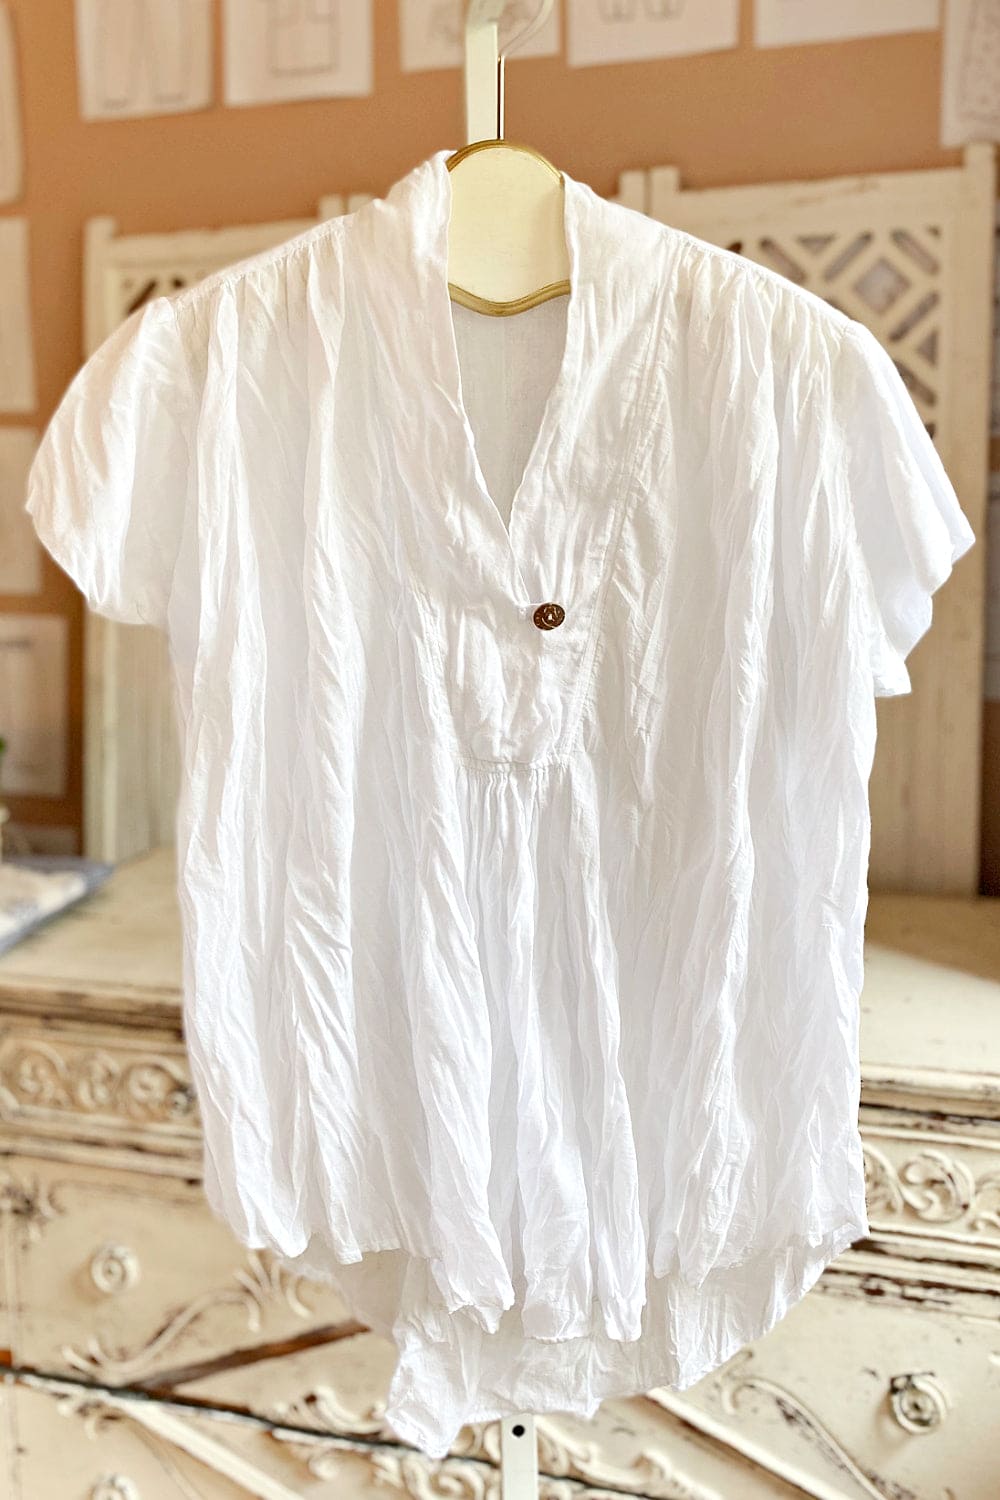 White v neck short sleeve cotton women's top.